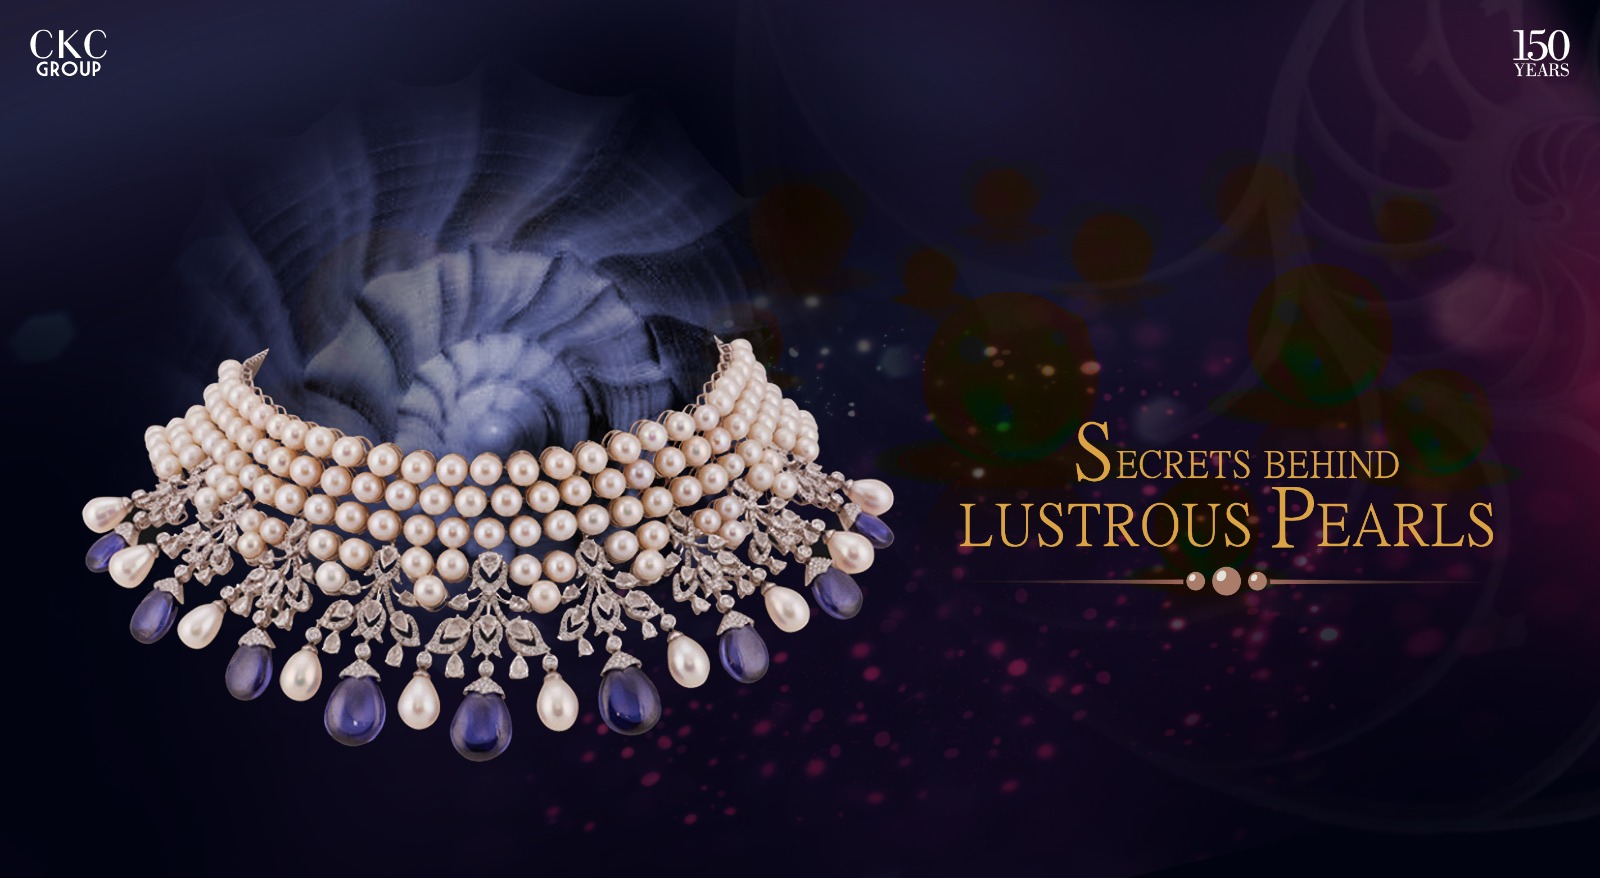 Secrets behind lustrous pearls